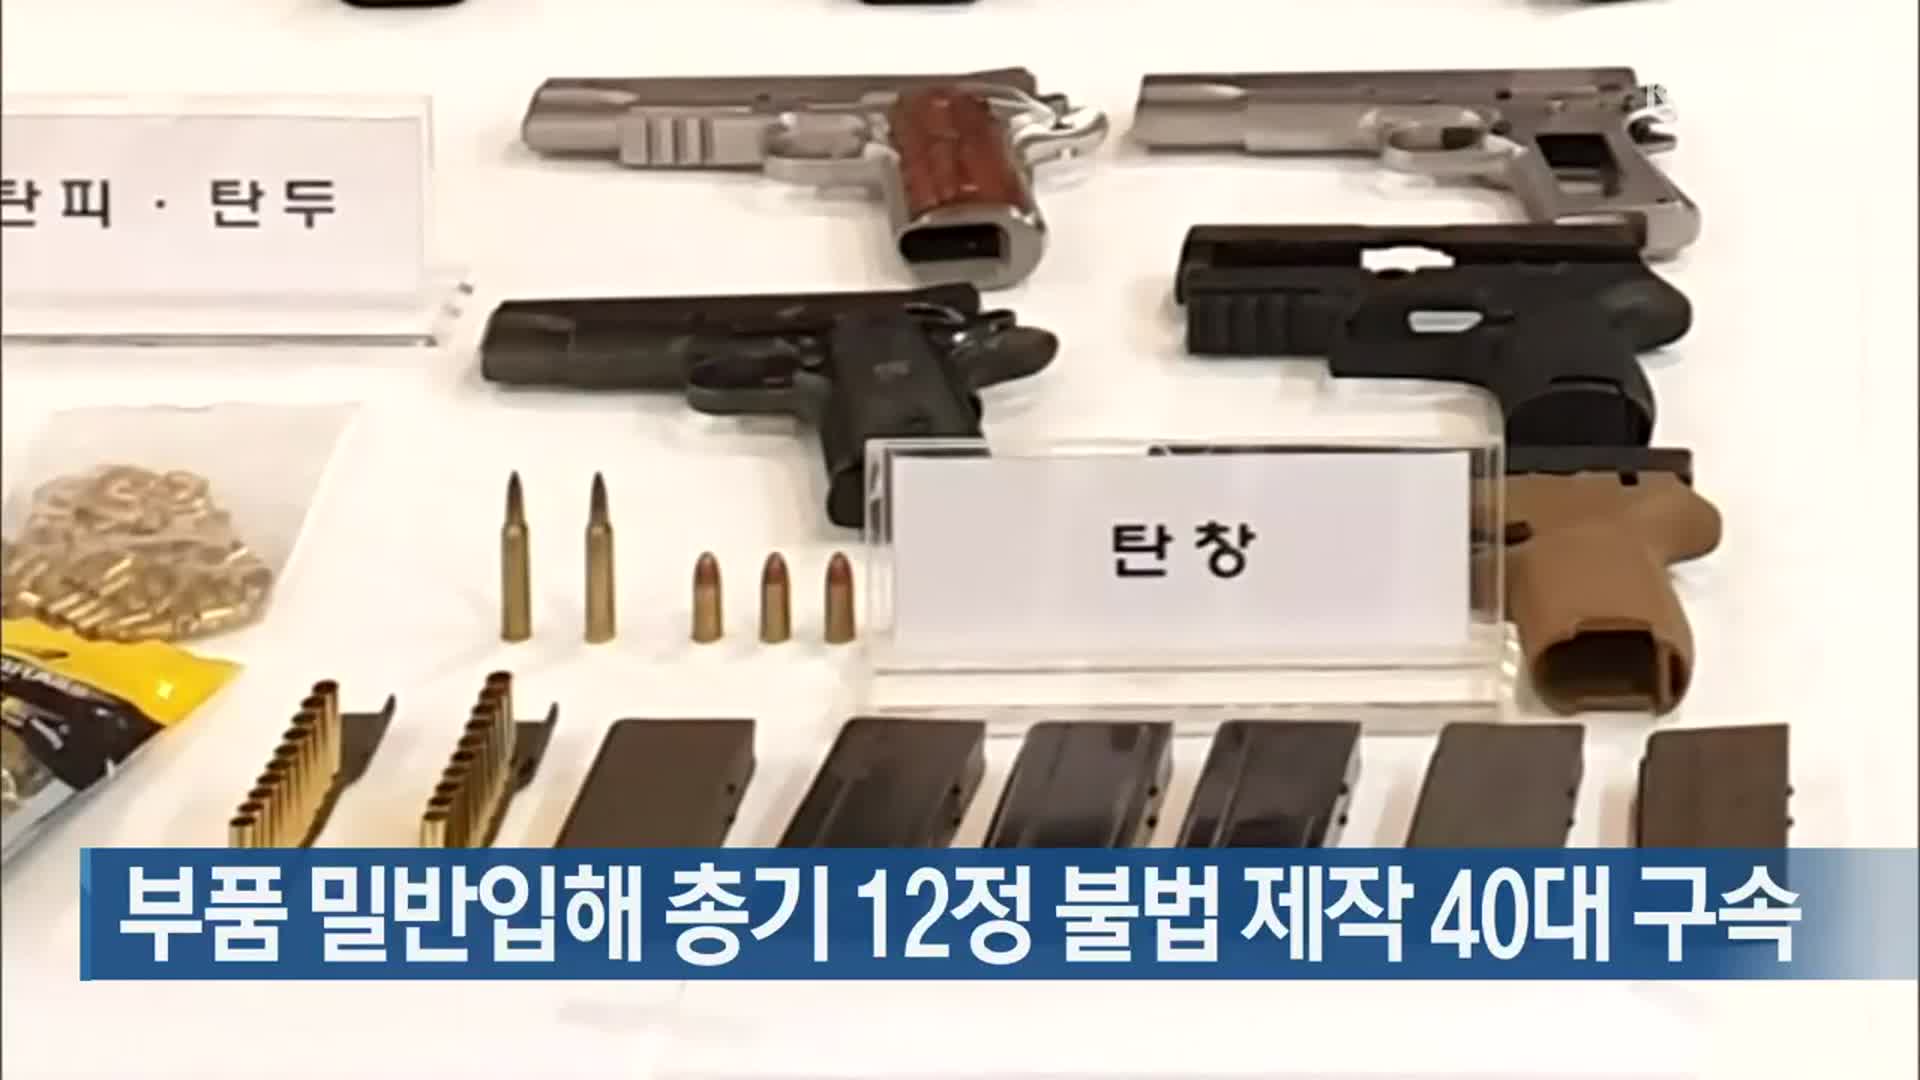 부품 밀반입해 총기 12정 불법 제작 40대 구속